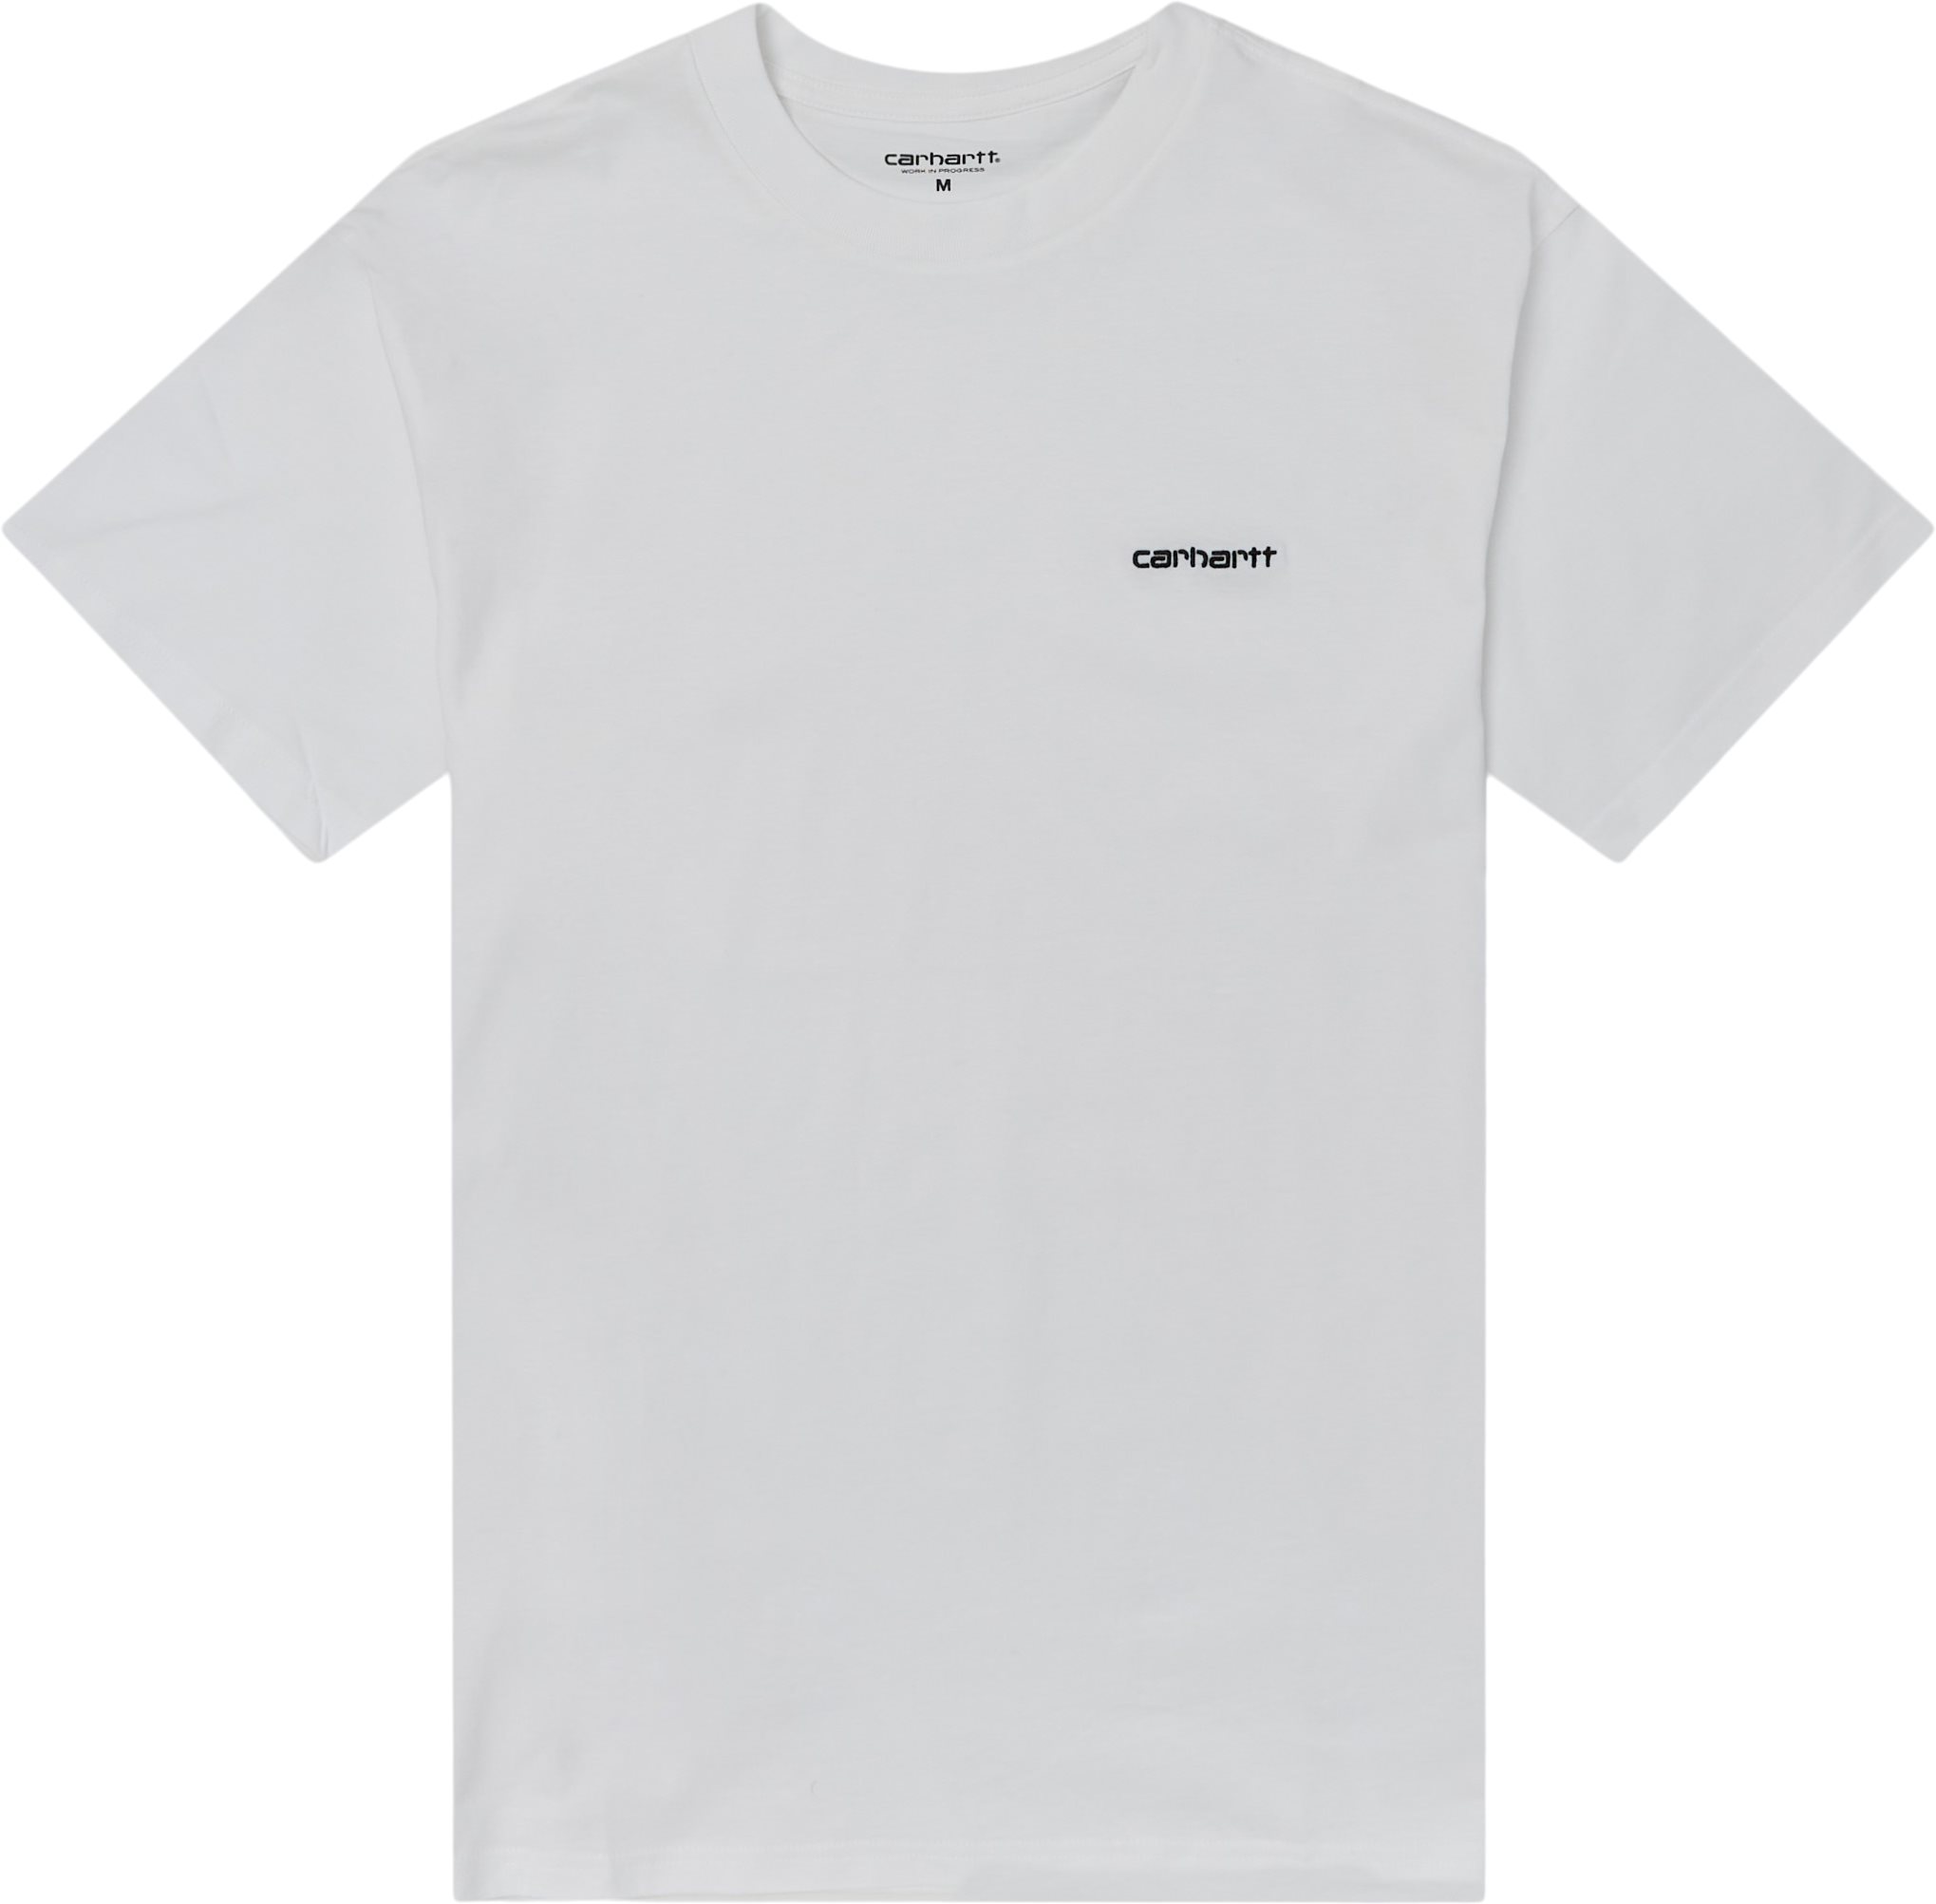 Carhartt WIP T-shirts S/S SCRIPT EMBROIDERY I025778 Vit